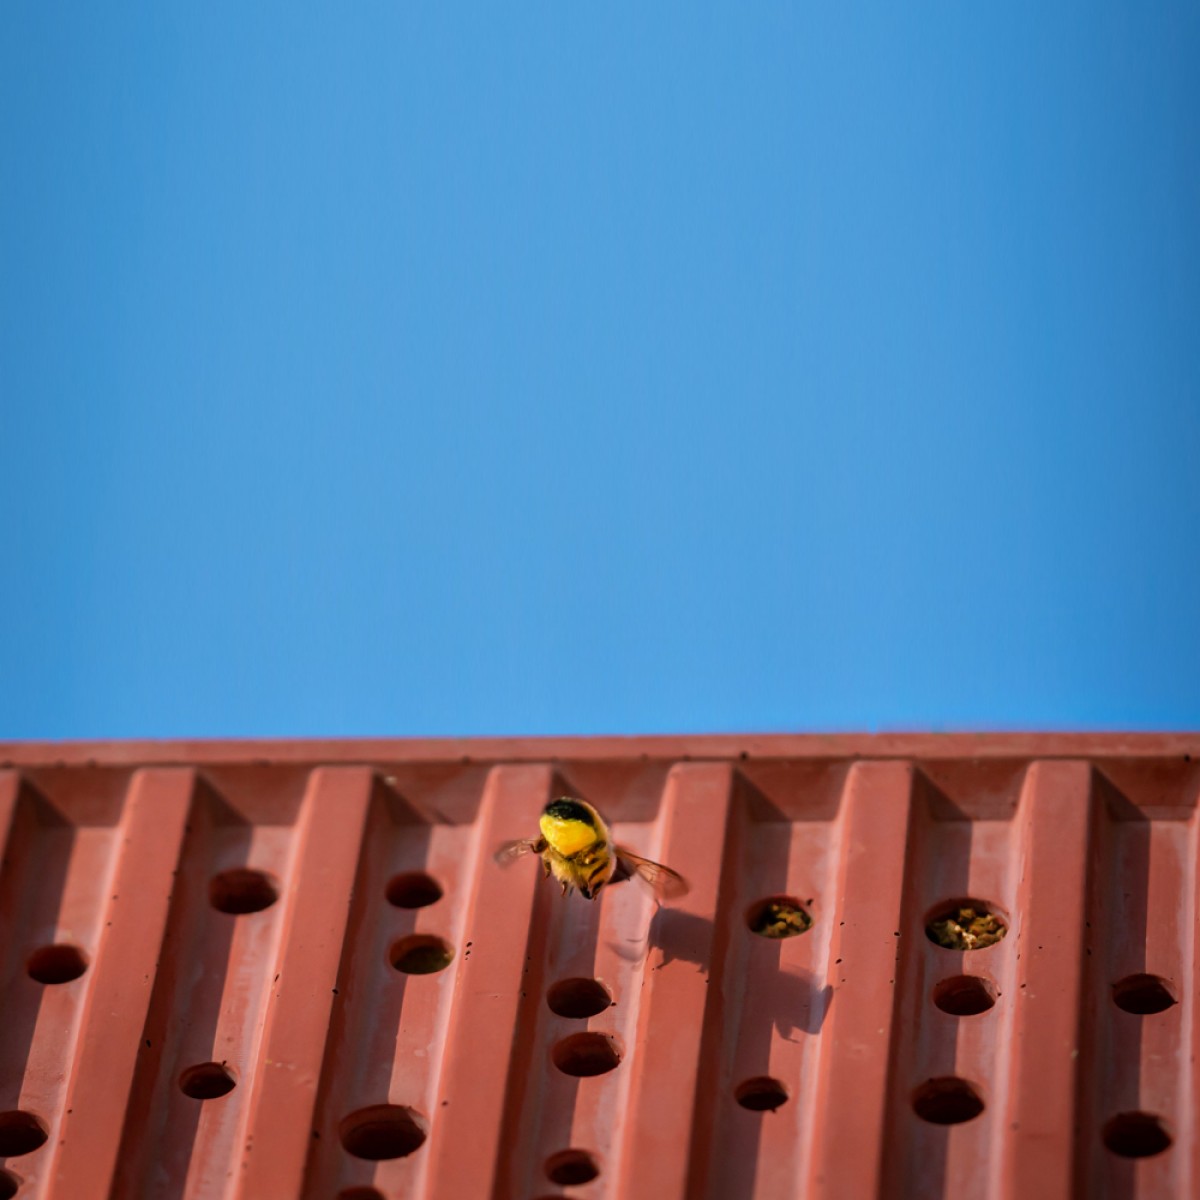 Bienenhotel aus Beton - beecontainer "Betongrau" im Überseecontainer-Look von Grellroth Design